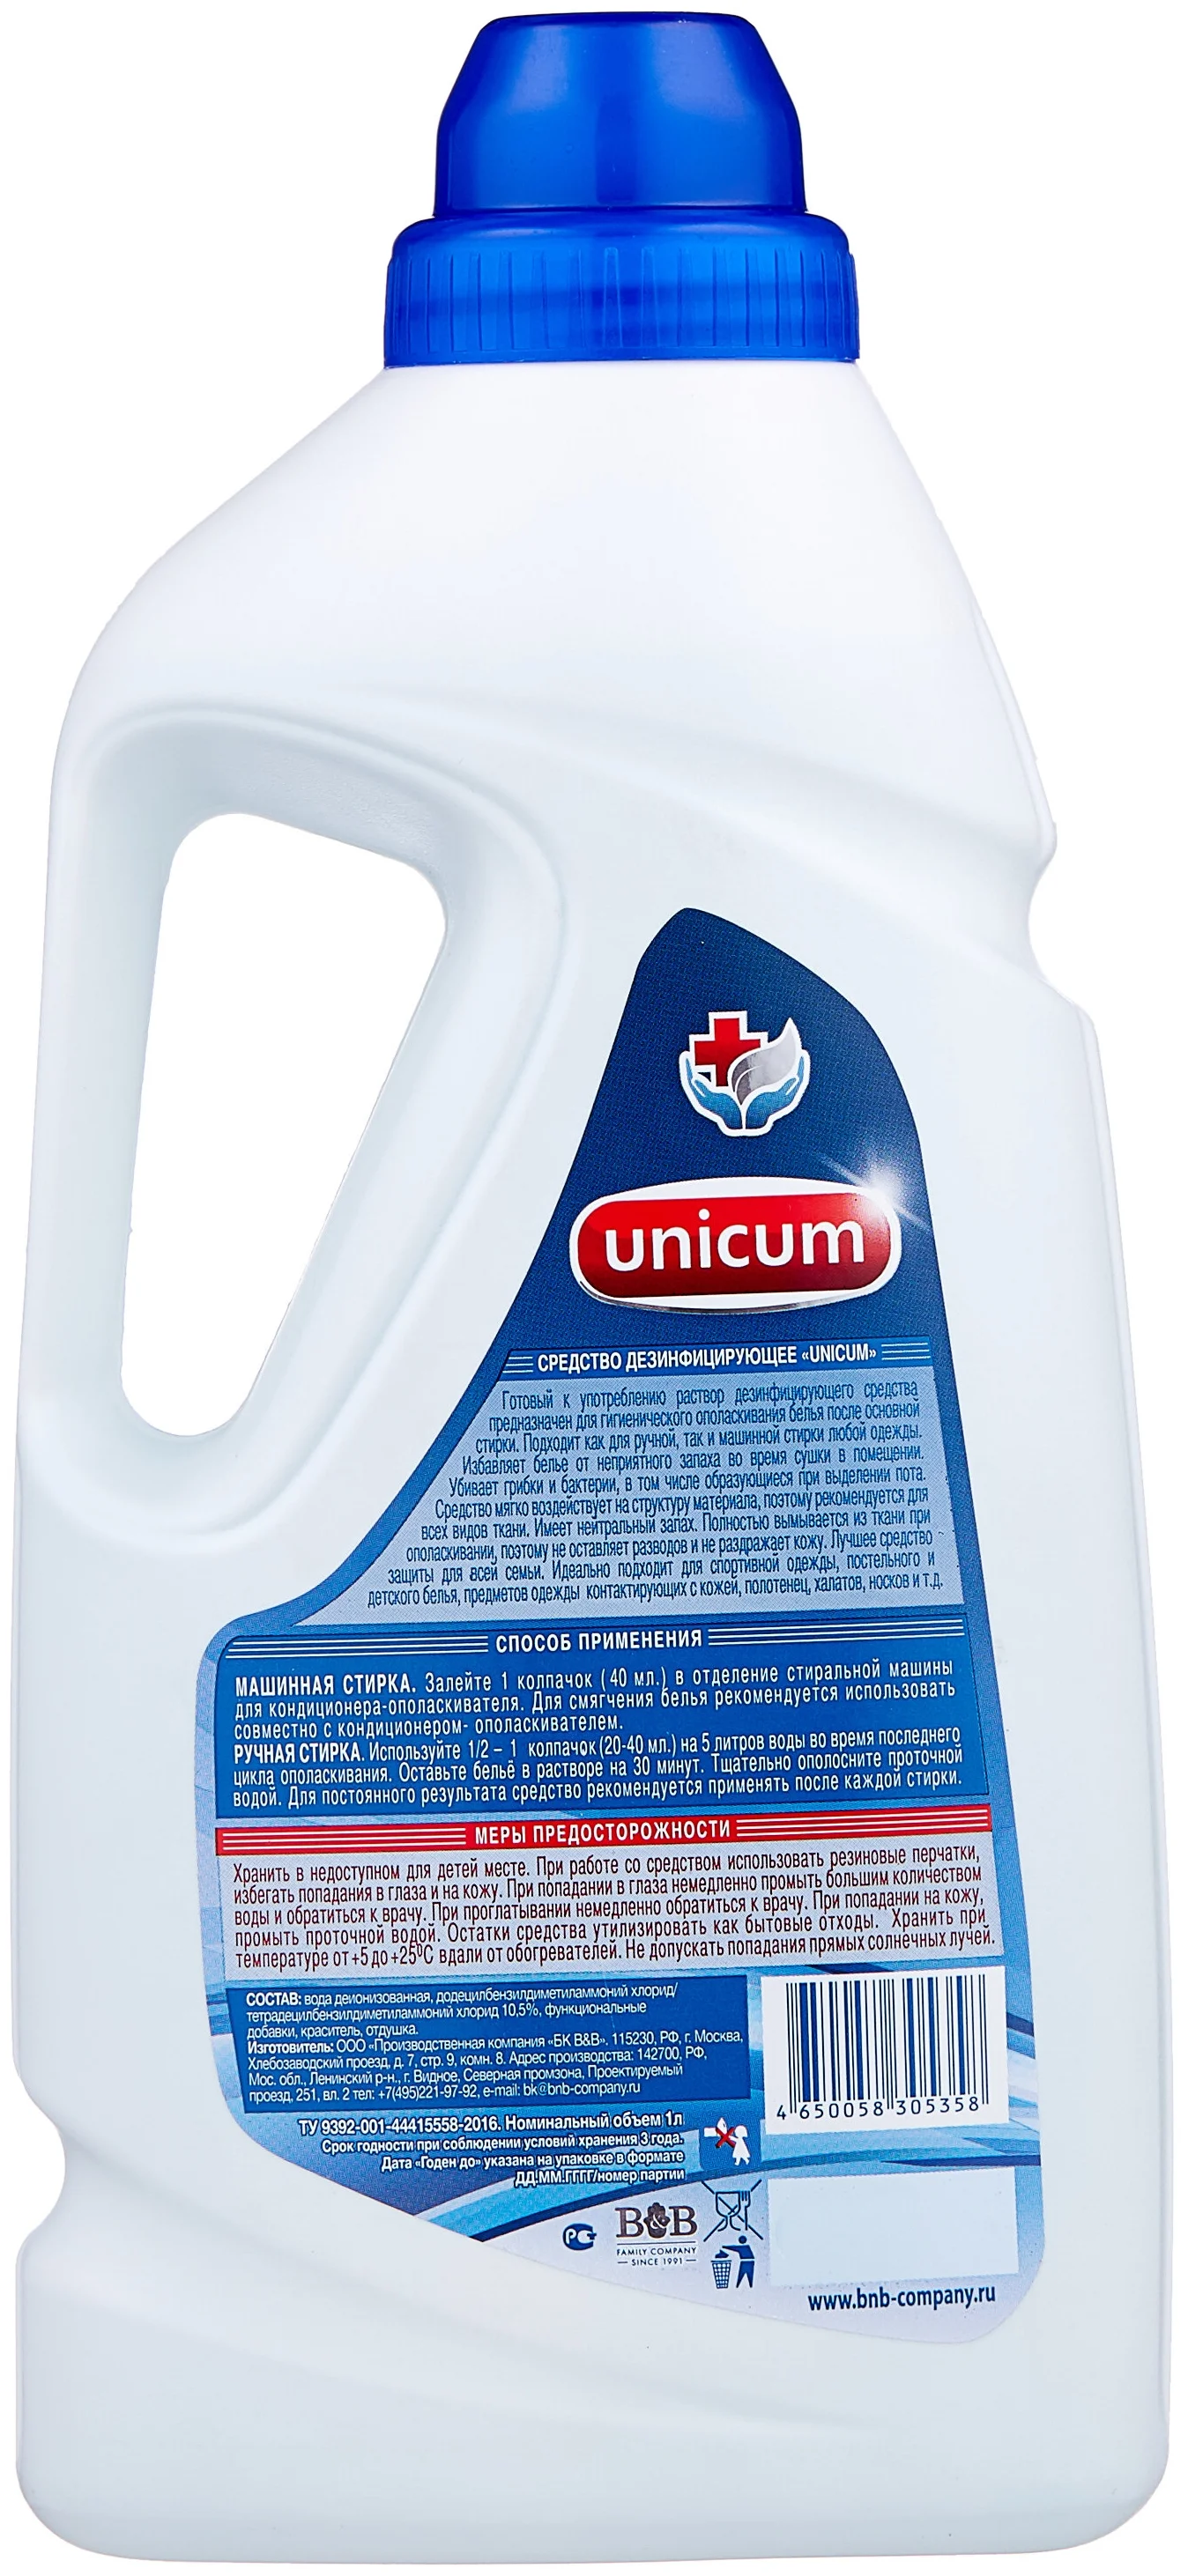 Unicum гигиенический дезинфицирующий - форма выпуска: жидкость